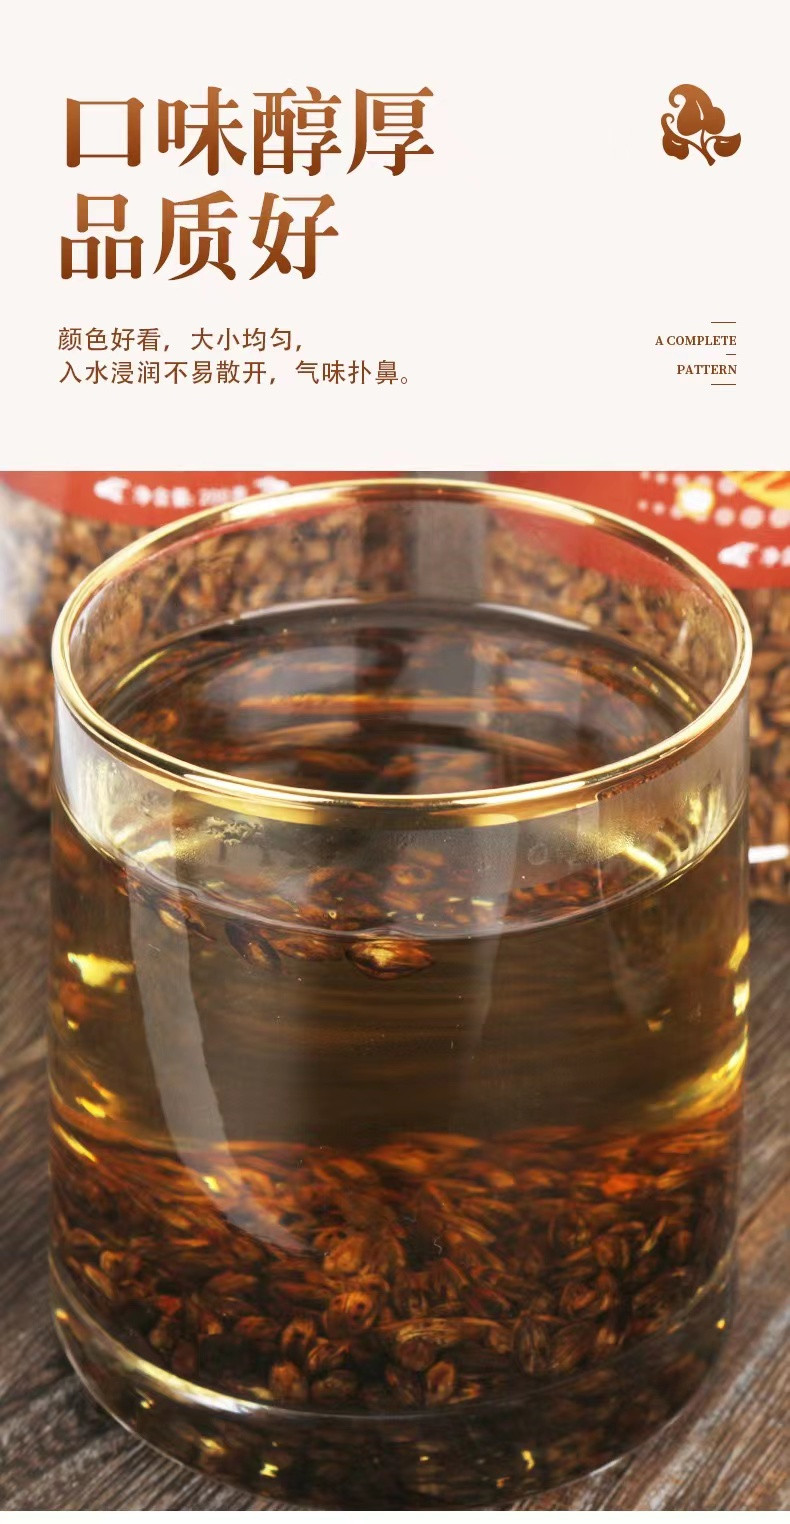 茗花百汇 【邮政助农】大麦茶200克/罐 醇香回甘常备茶饮【XR】